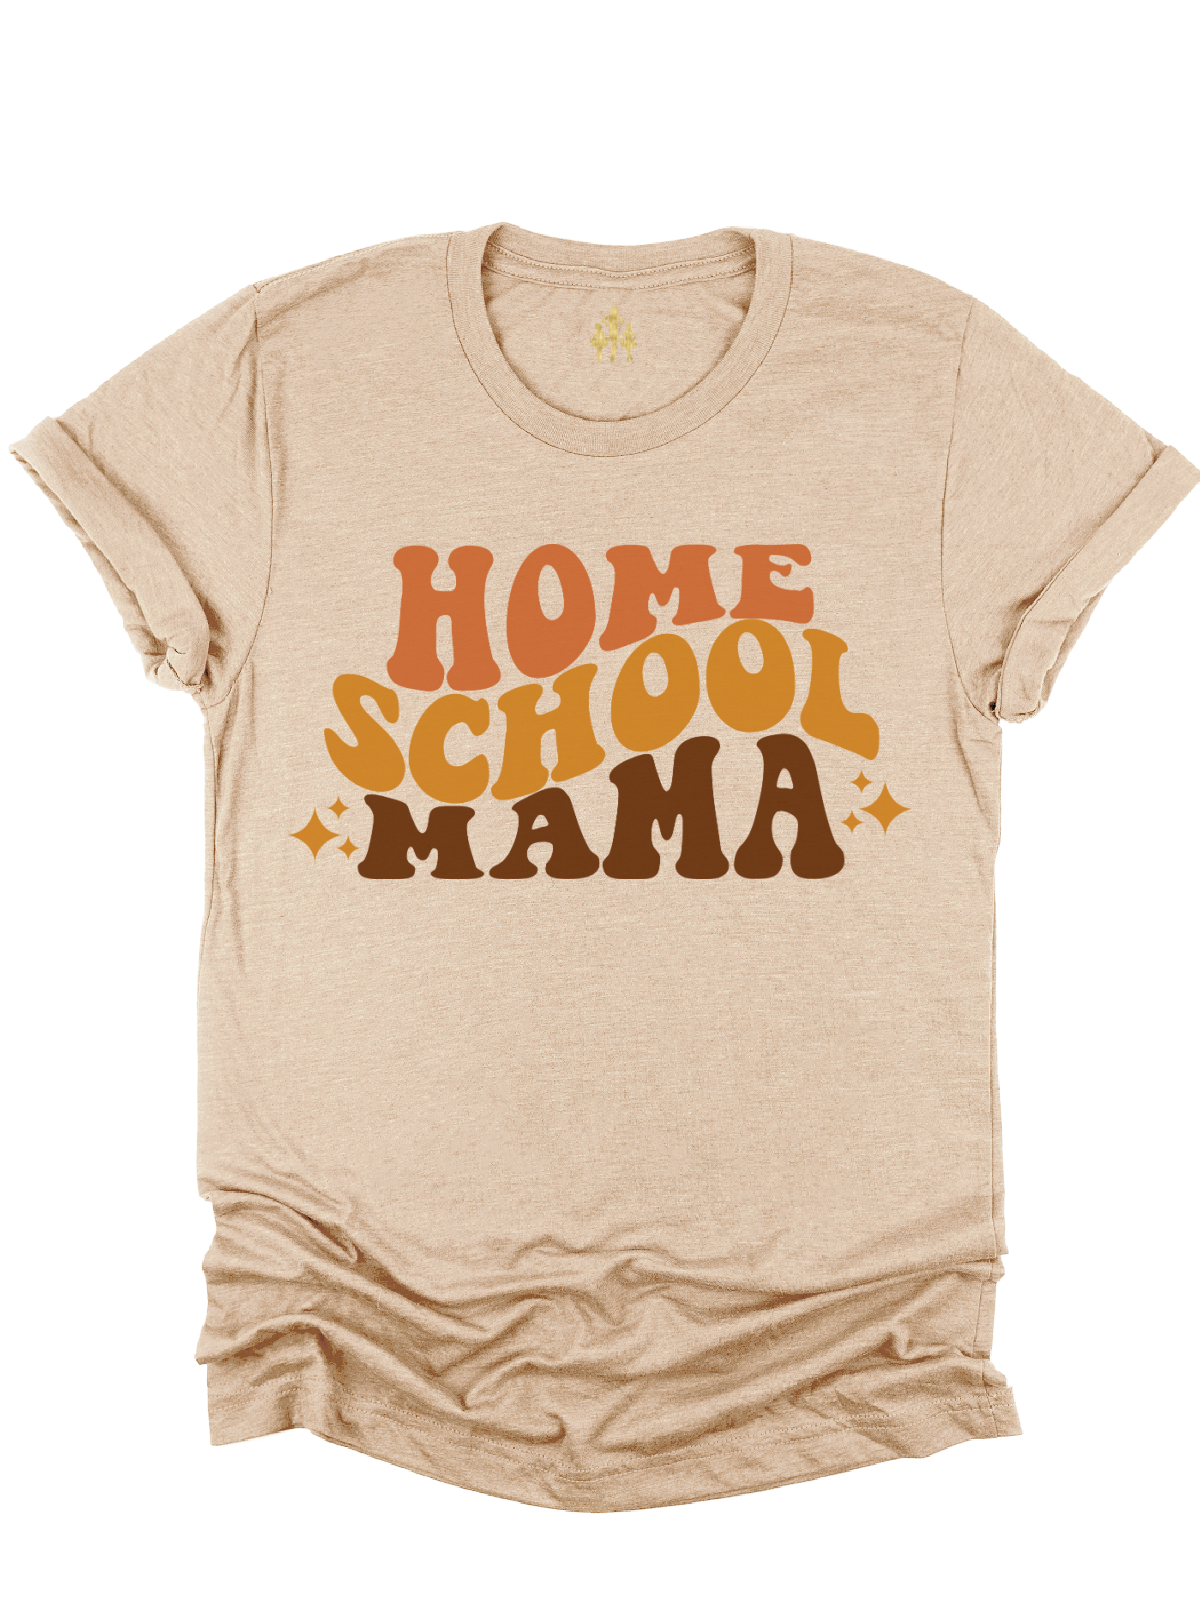 Homeschool Mama Adult Shirt in Heather Tan